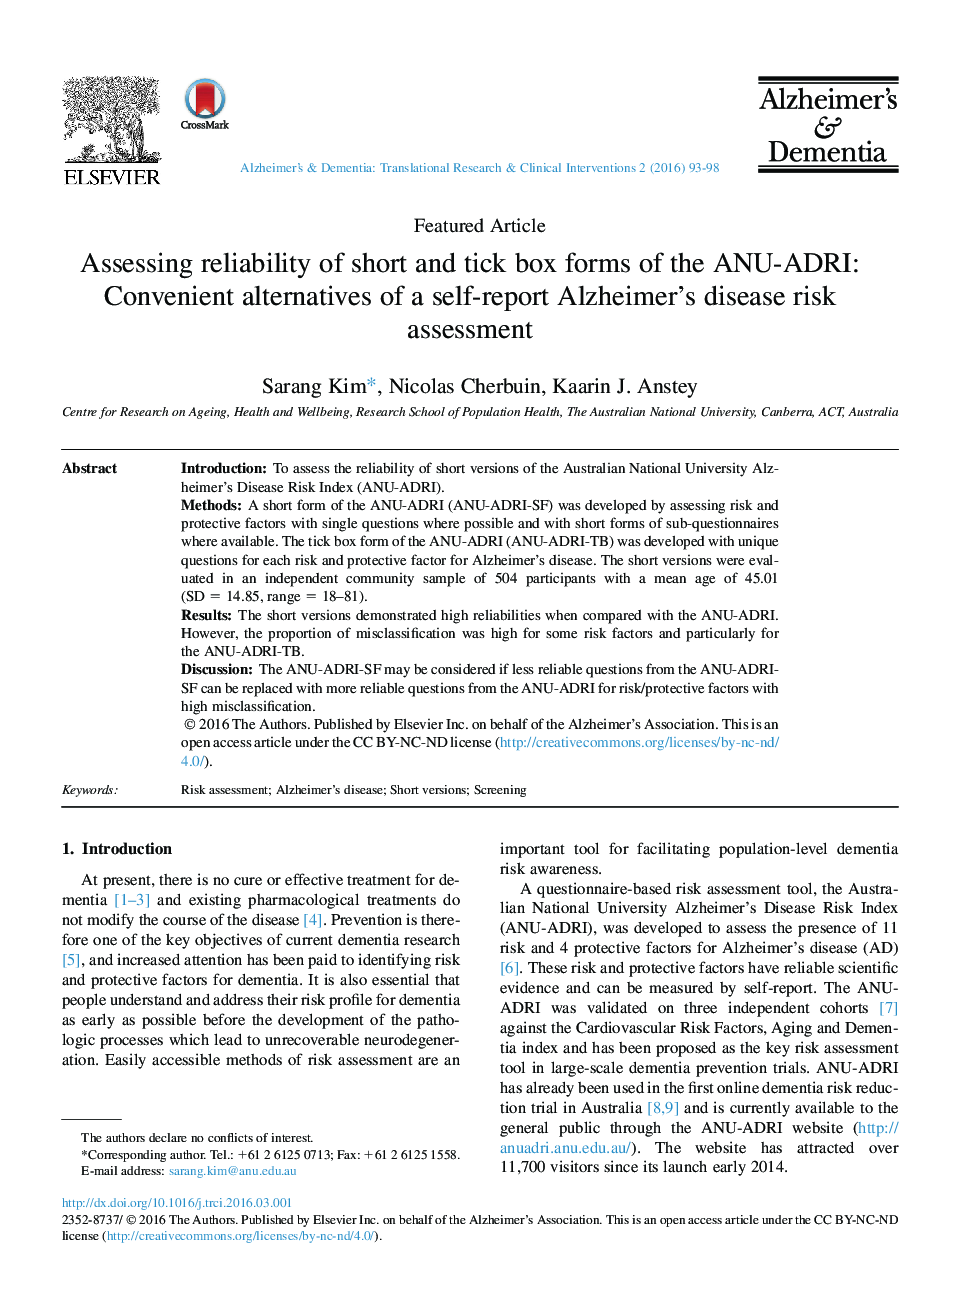 ارزیابی قابلیت اطمینان فرم های جعبه کوتاه و تیک ANU-ADRI: گزینه های مناسب از ارزیابی ریسک بیماری آلزایمر خودگزارشی